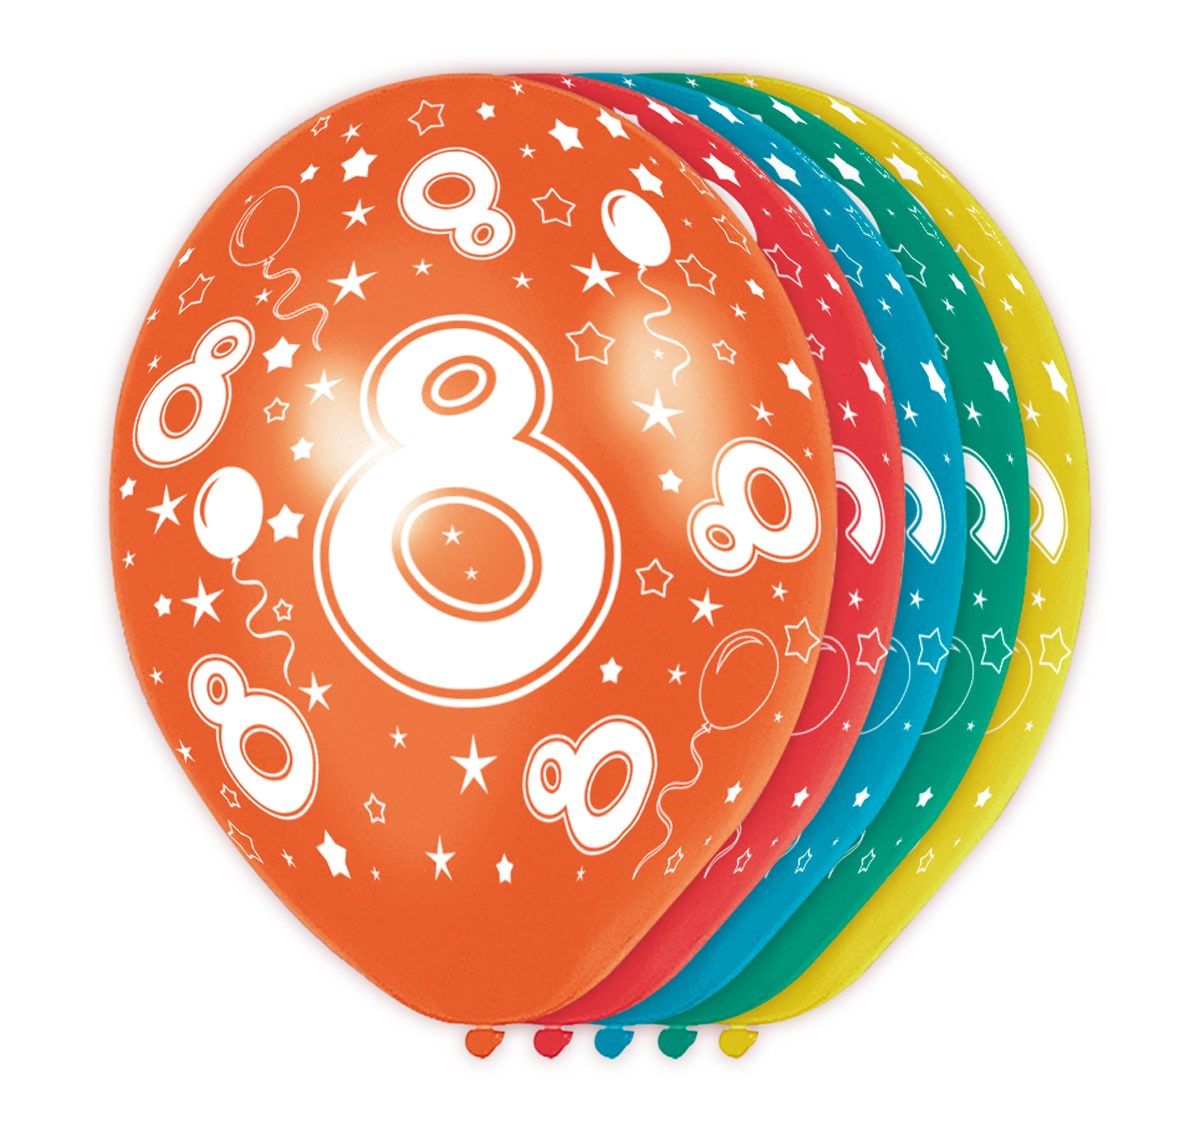 Feestelijke verjaardag ballonnen 8 jaar